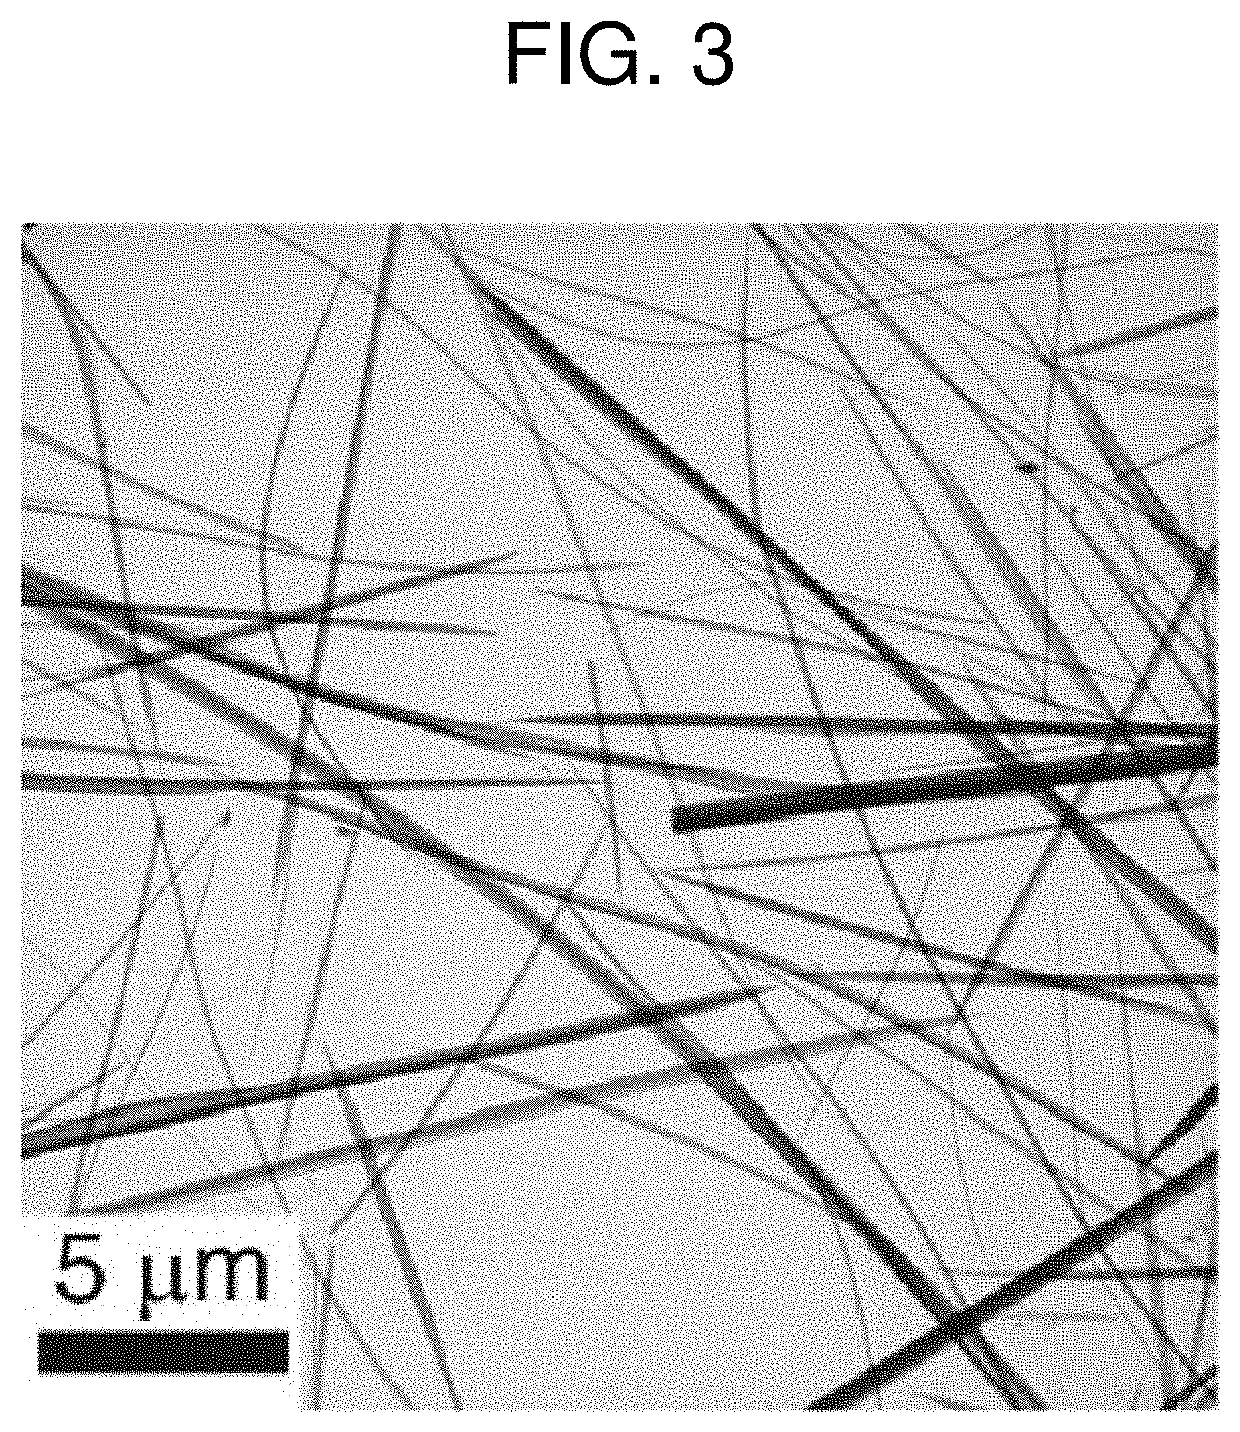 Micro-nanostructure manufactured using amorphous nanostructure and manufacturing method therefor